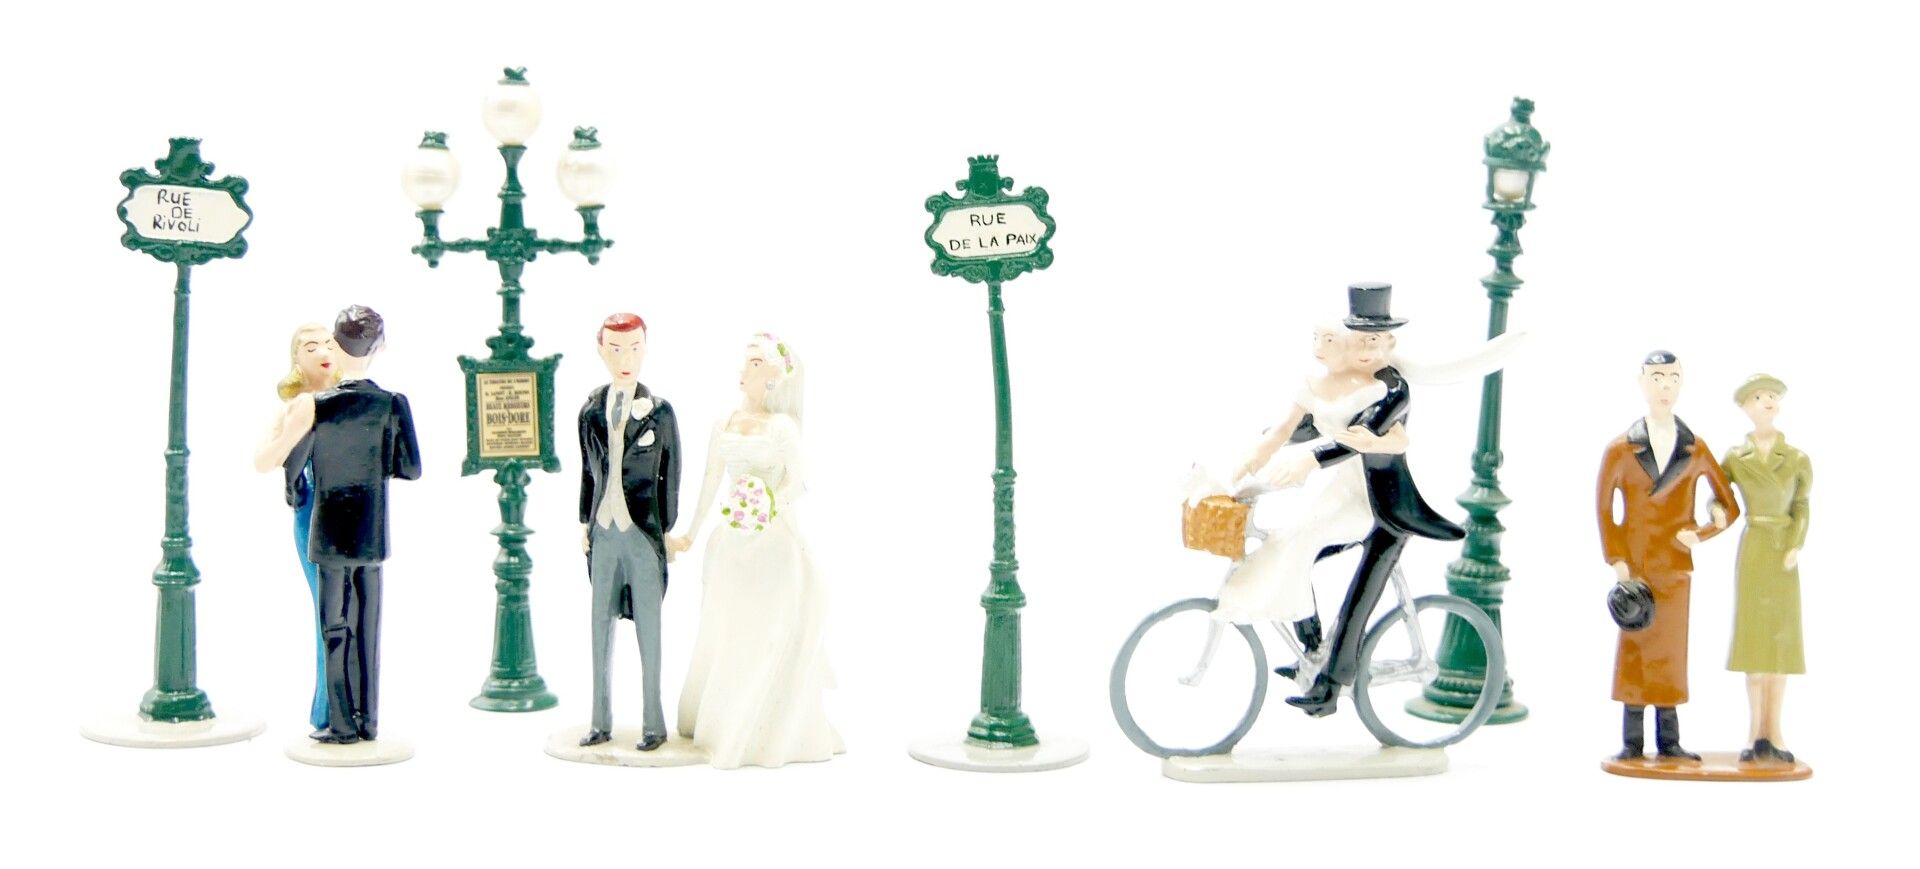 Null 皮克斯和杂项

人物，巴黎的路灯，自行车上的新郎和新娘夫妇



小幅擦伤，使用状况



专家 : Jean-Claude Cazenave